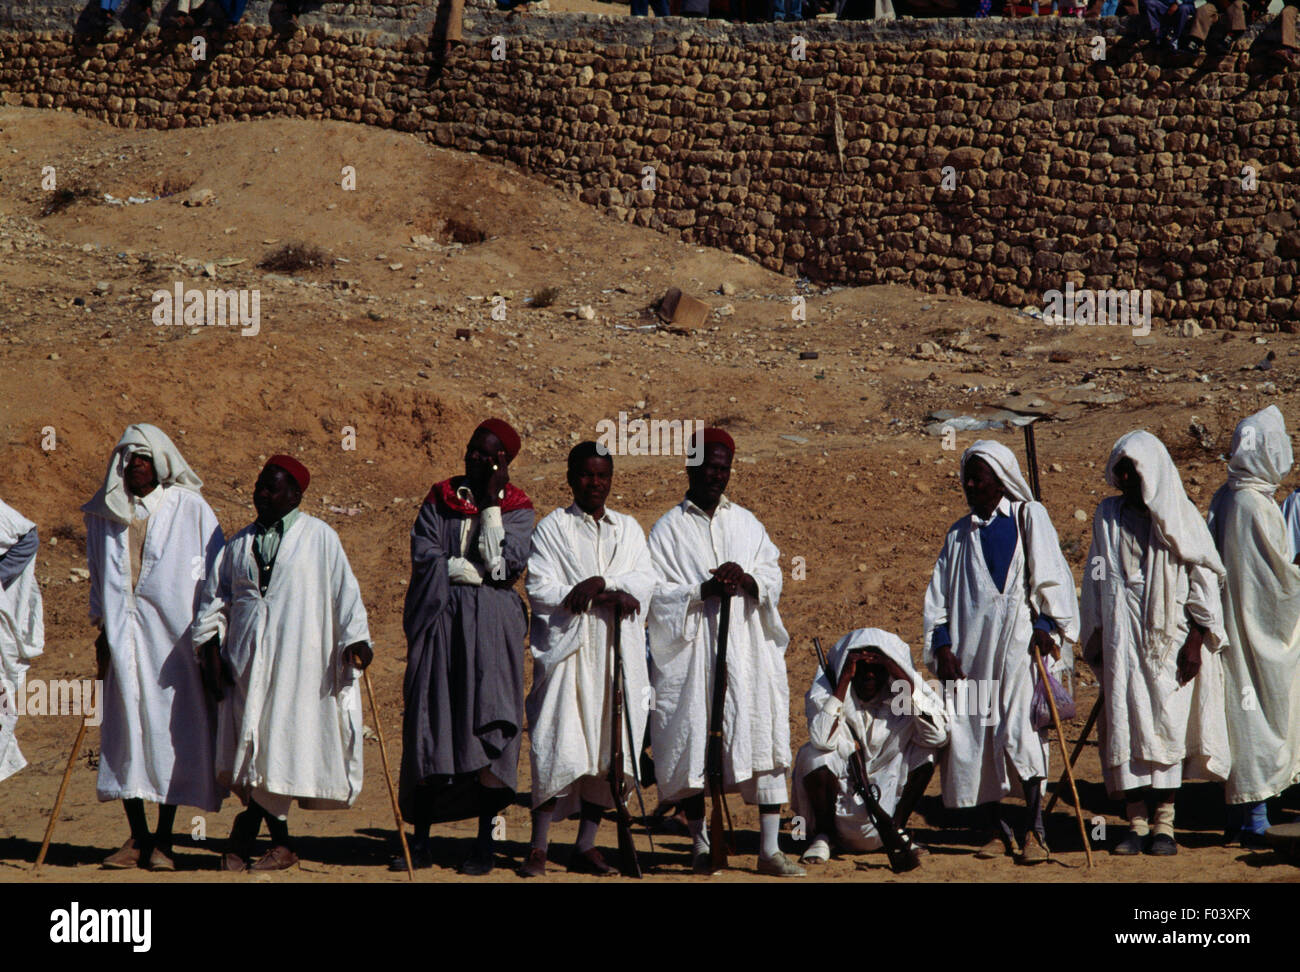 Men in traditional clothes, Matmata Berber festival, Tunisia. Stock Photo